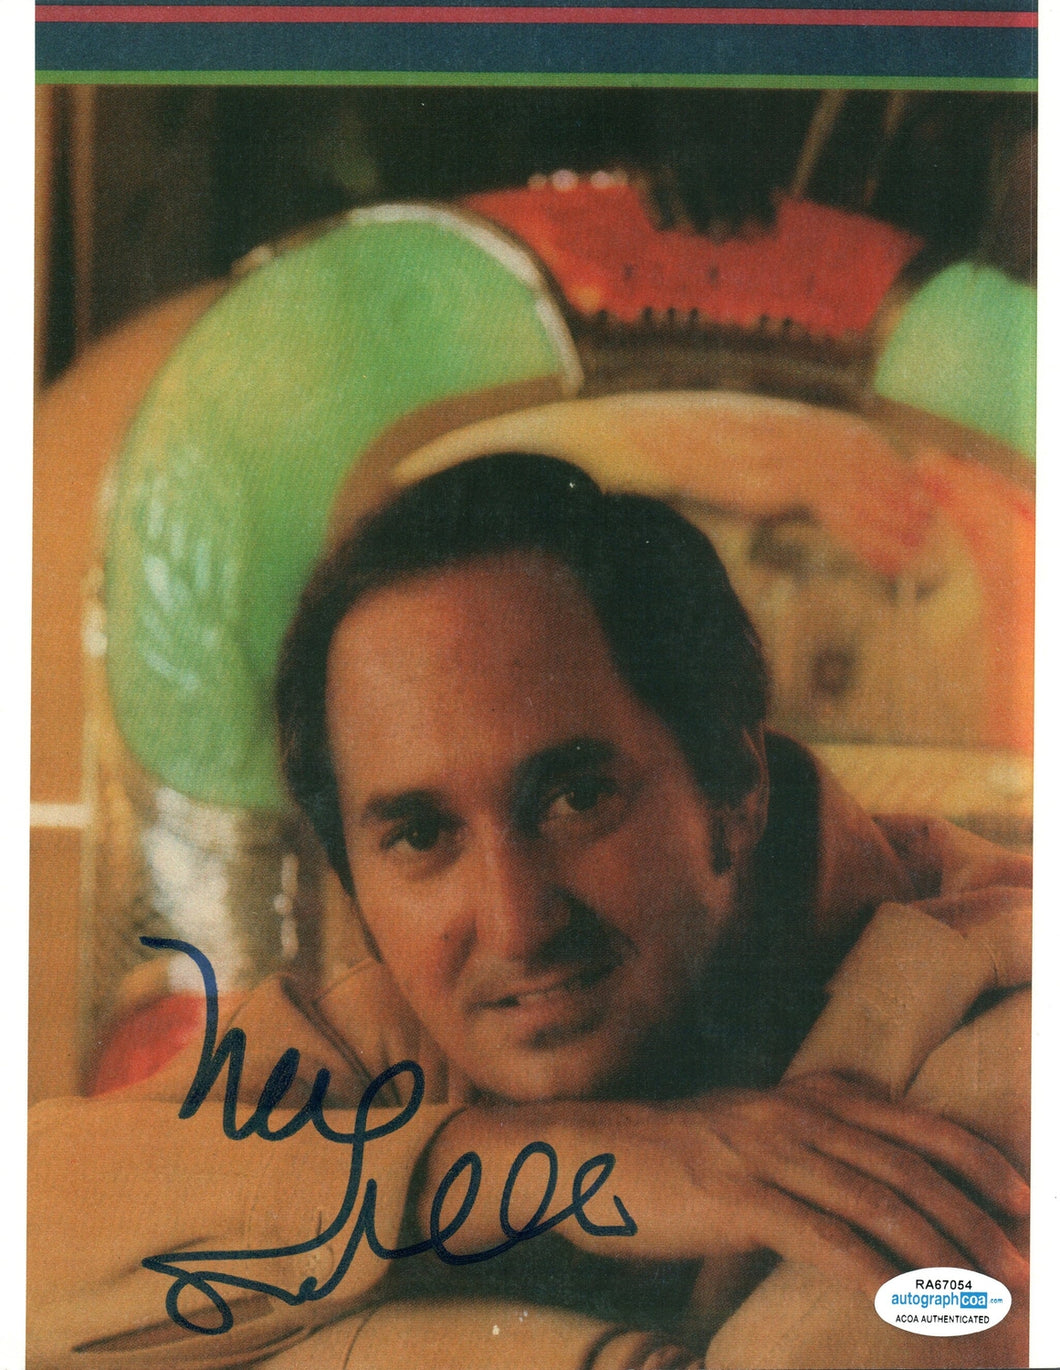 Neil Sedaka Autographed Signed 8x10 Photo